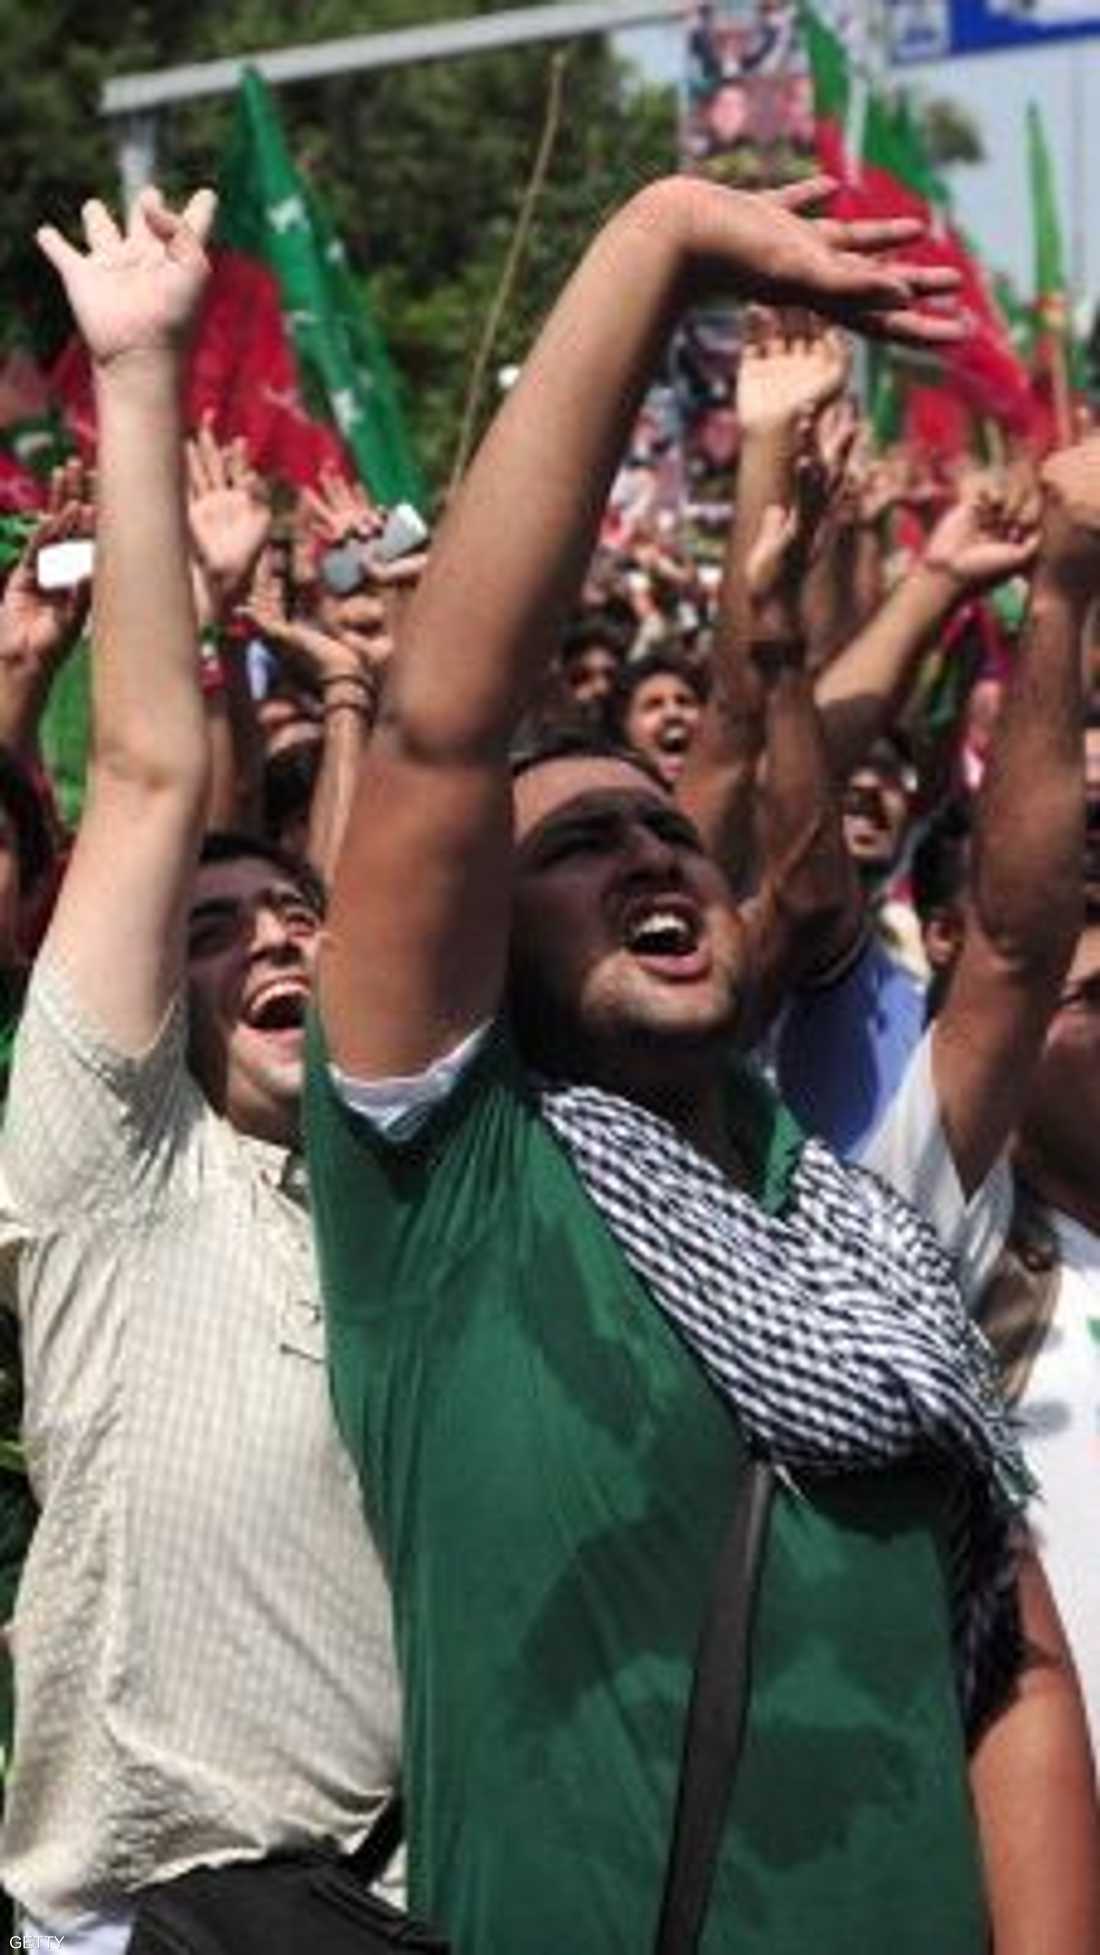 تجمع آلاف المعارضين في مدينة لاهور الباكستانية، لتنظيم مسيرة حاشدة تطالب برحيل الحكومة